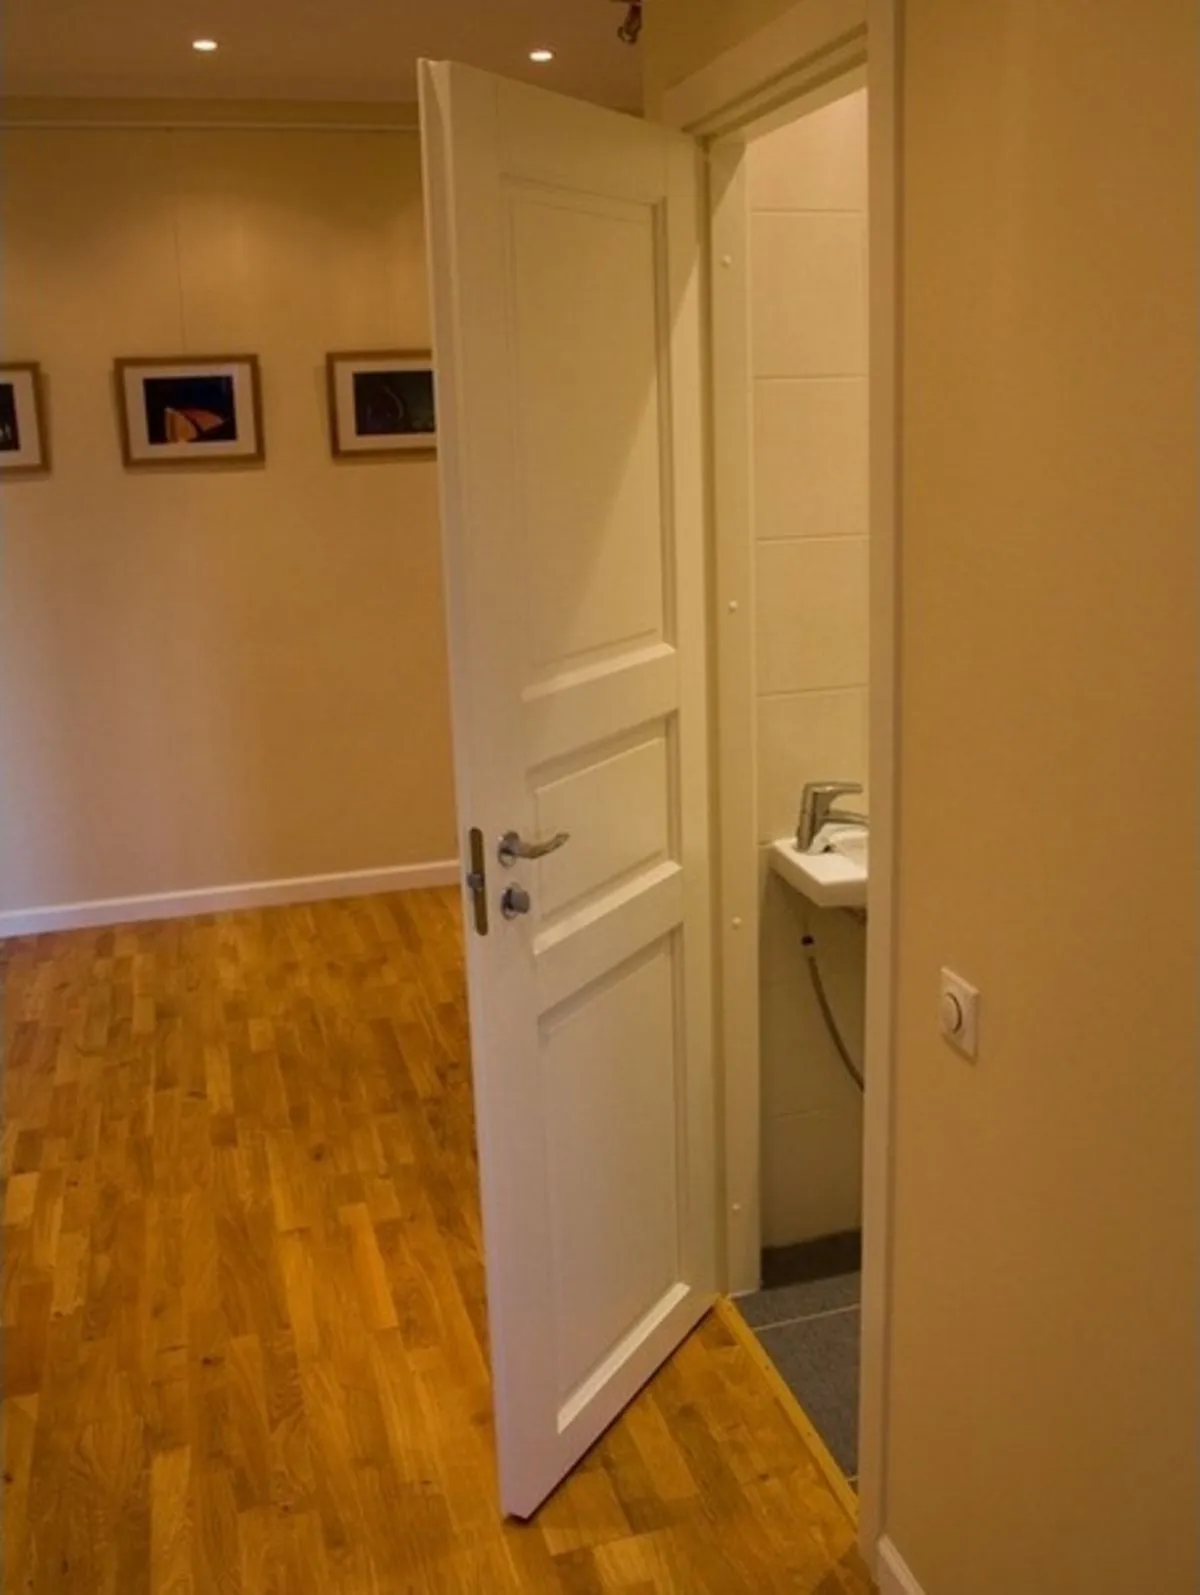 Стандарт двери ванная. Двери в ванную комнату и туалет. Межкомнатные двери в туалет. Межкомнатные двери ванна туалет. Узкие двери в ванную и туалет.